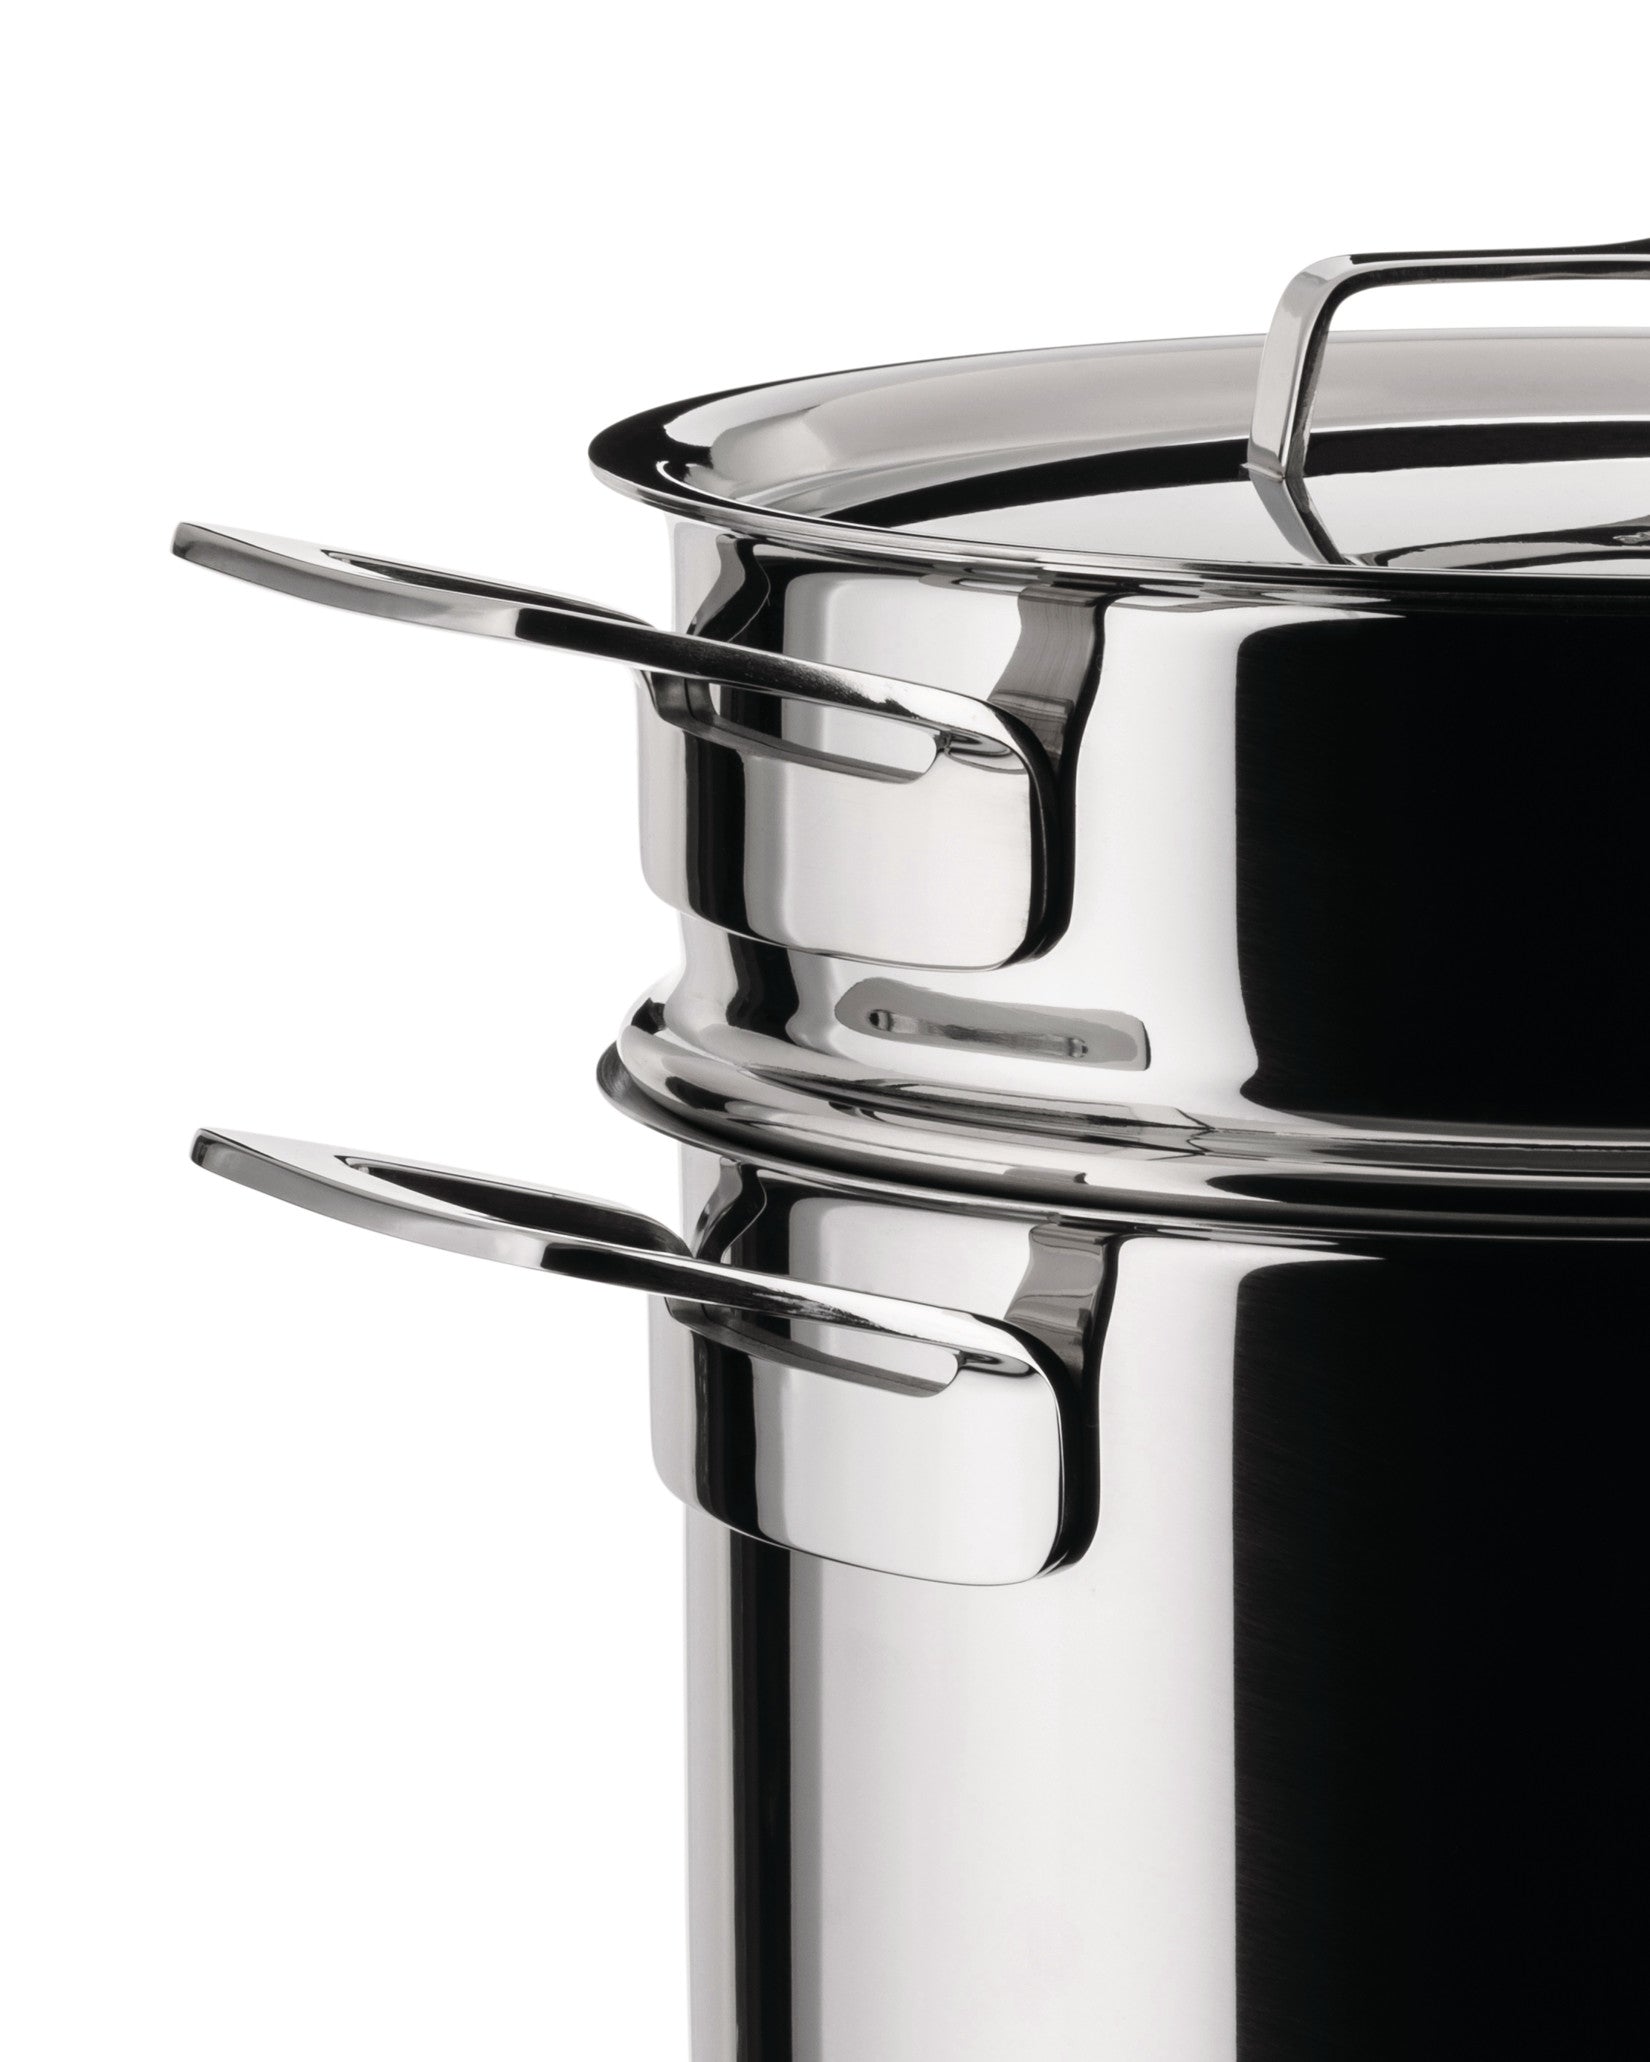 Pots&Pans - Pots and pans set 9 pieces – Alessi USA Inc